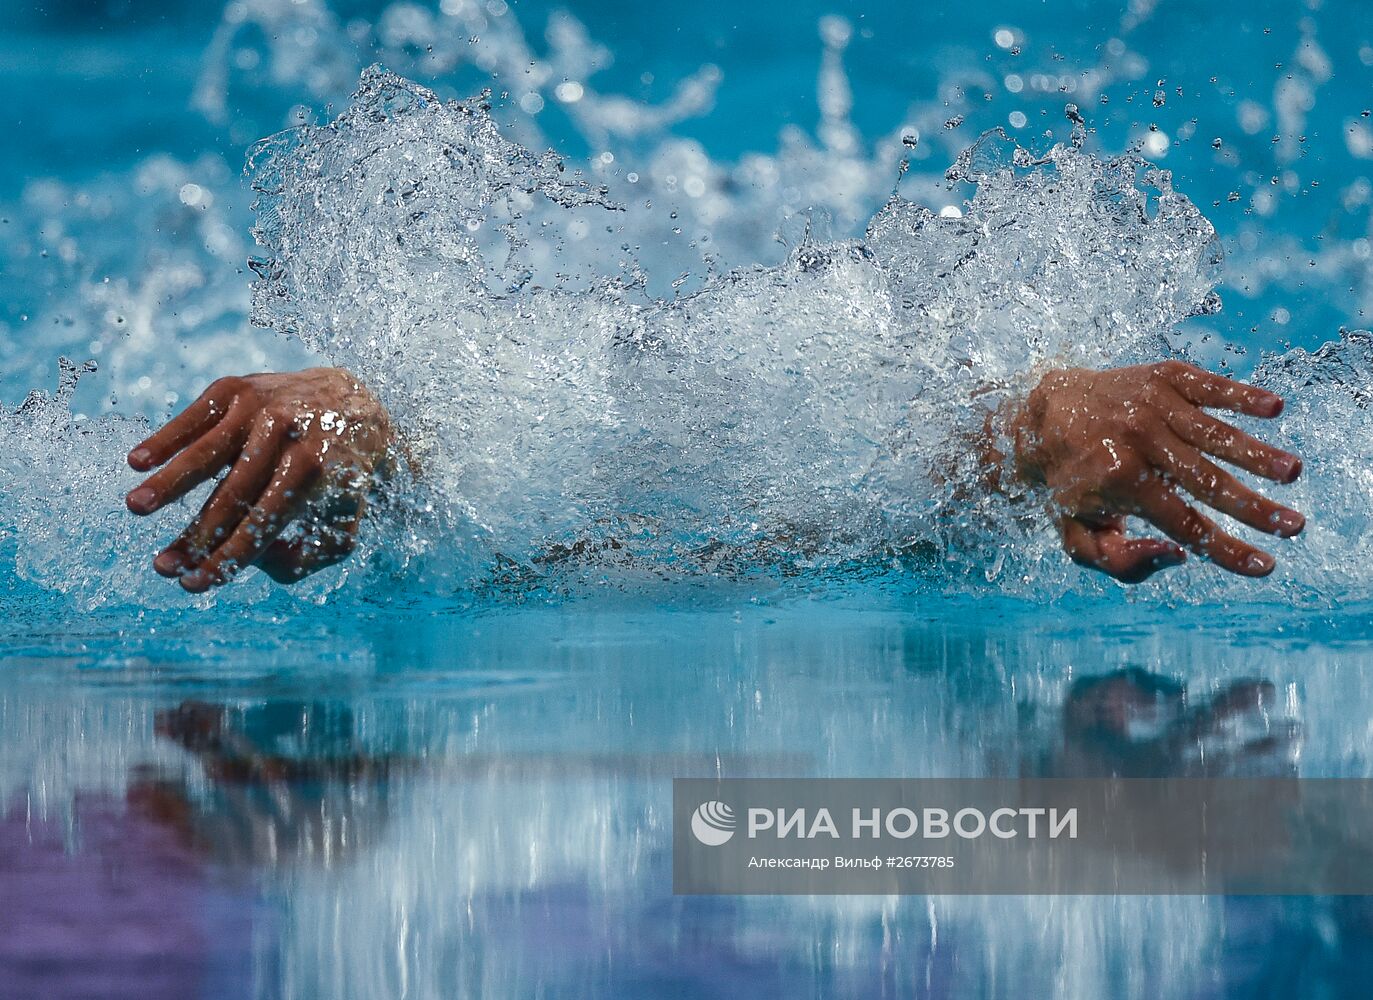 Чемпионат мира FINA 2015. Плавание. Третий день. Вечерняя сессия